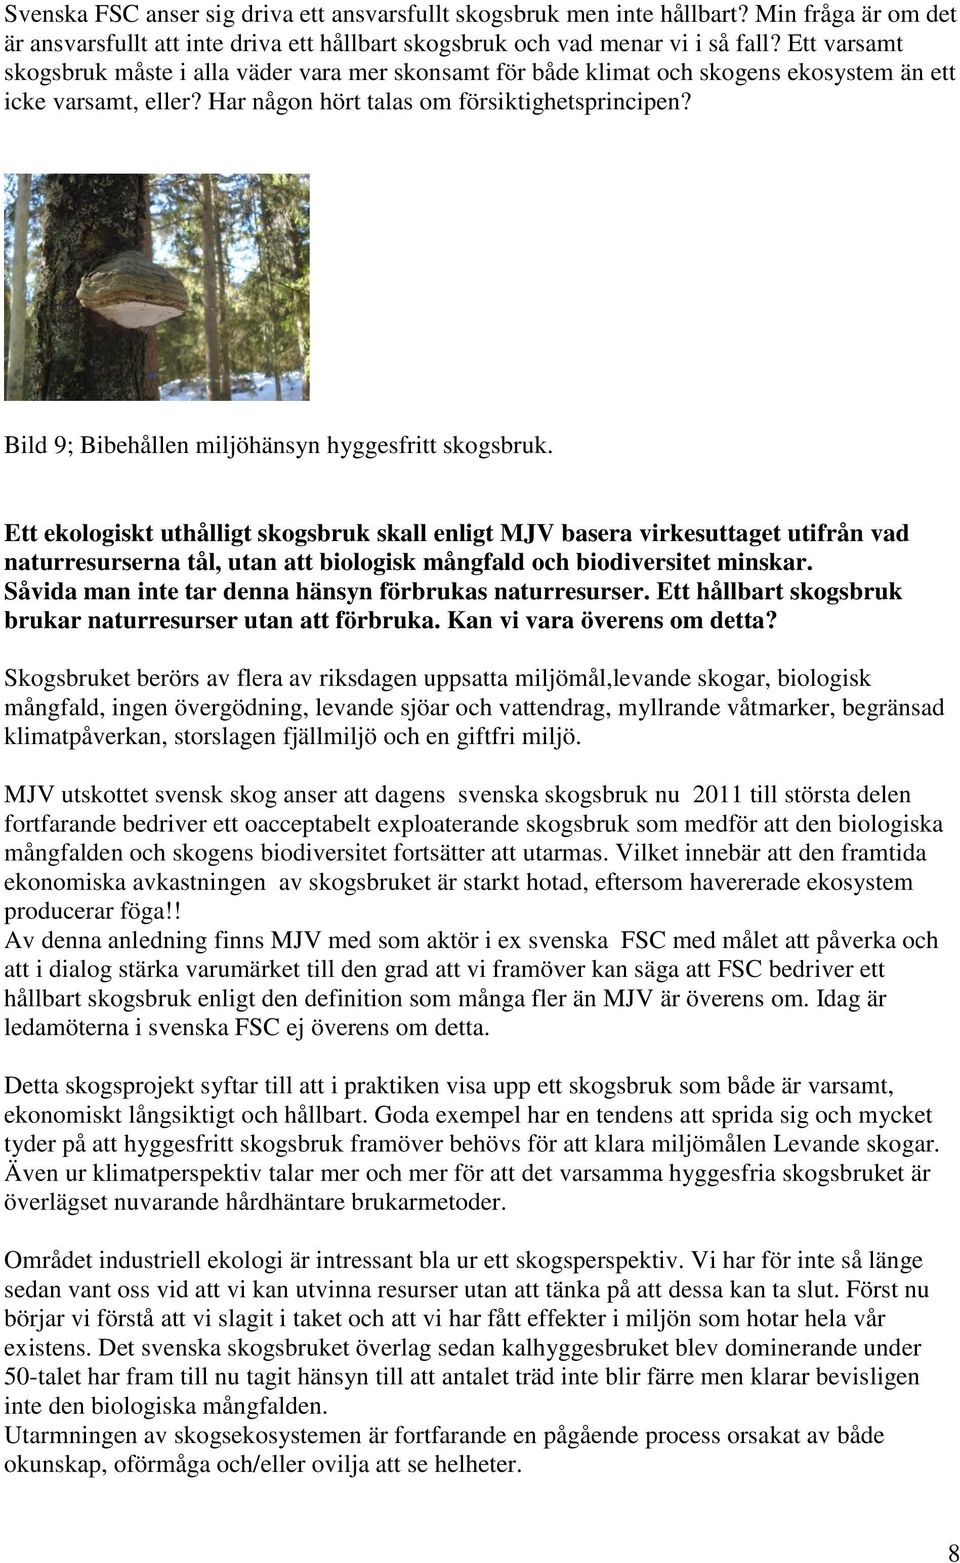 Bild 9; Bibehållen miljöhänsyn hyggesfritt skogsbruk.